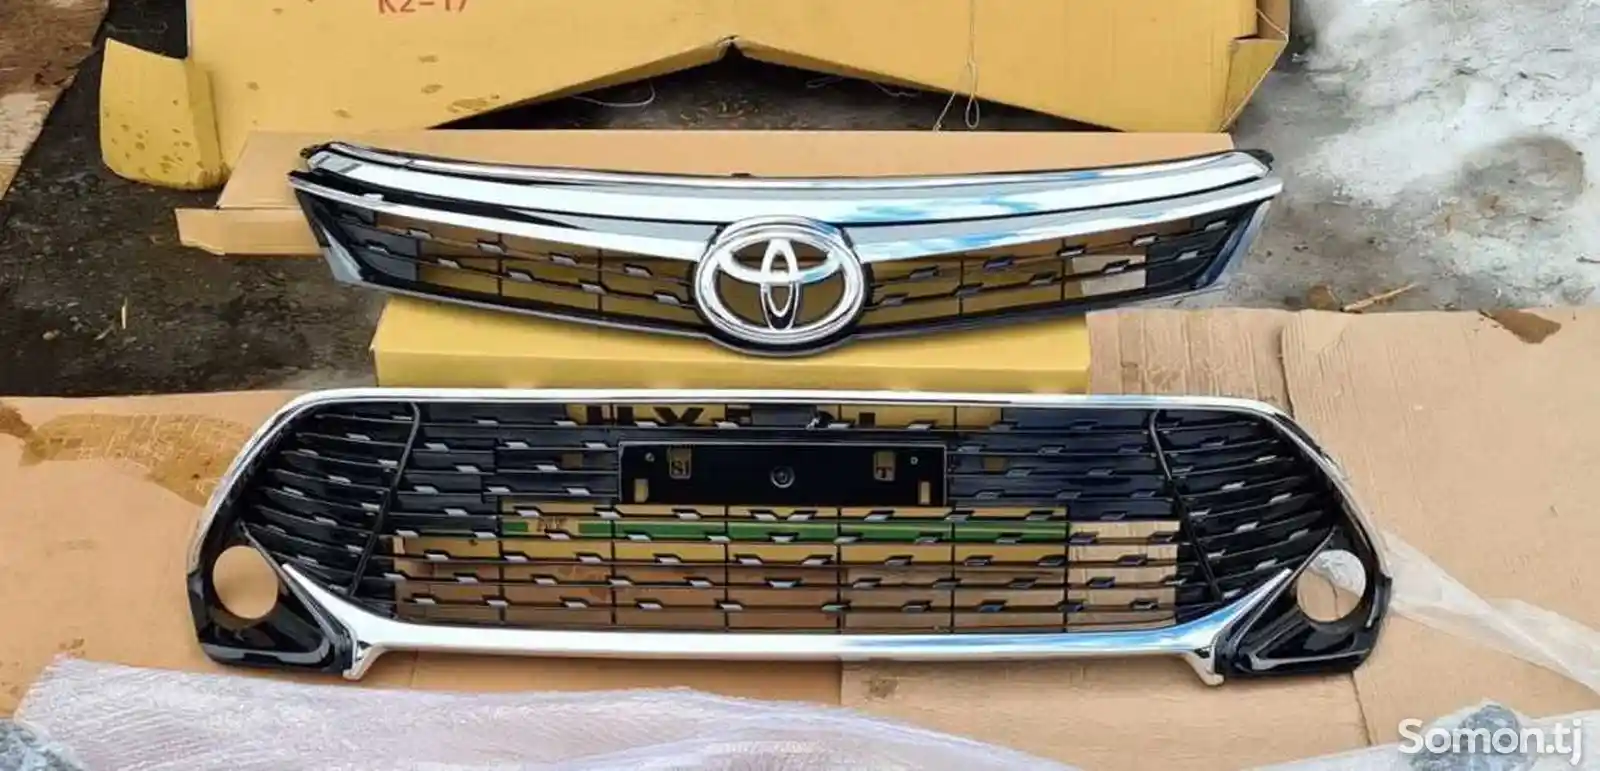 Комплект решеток Toyota Camry v55 exclusive